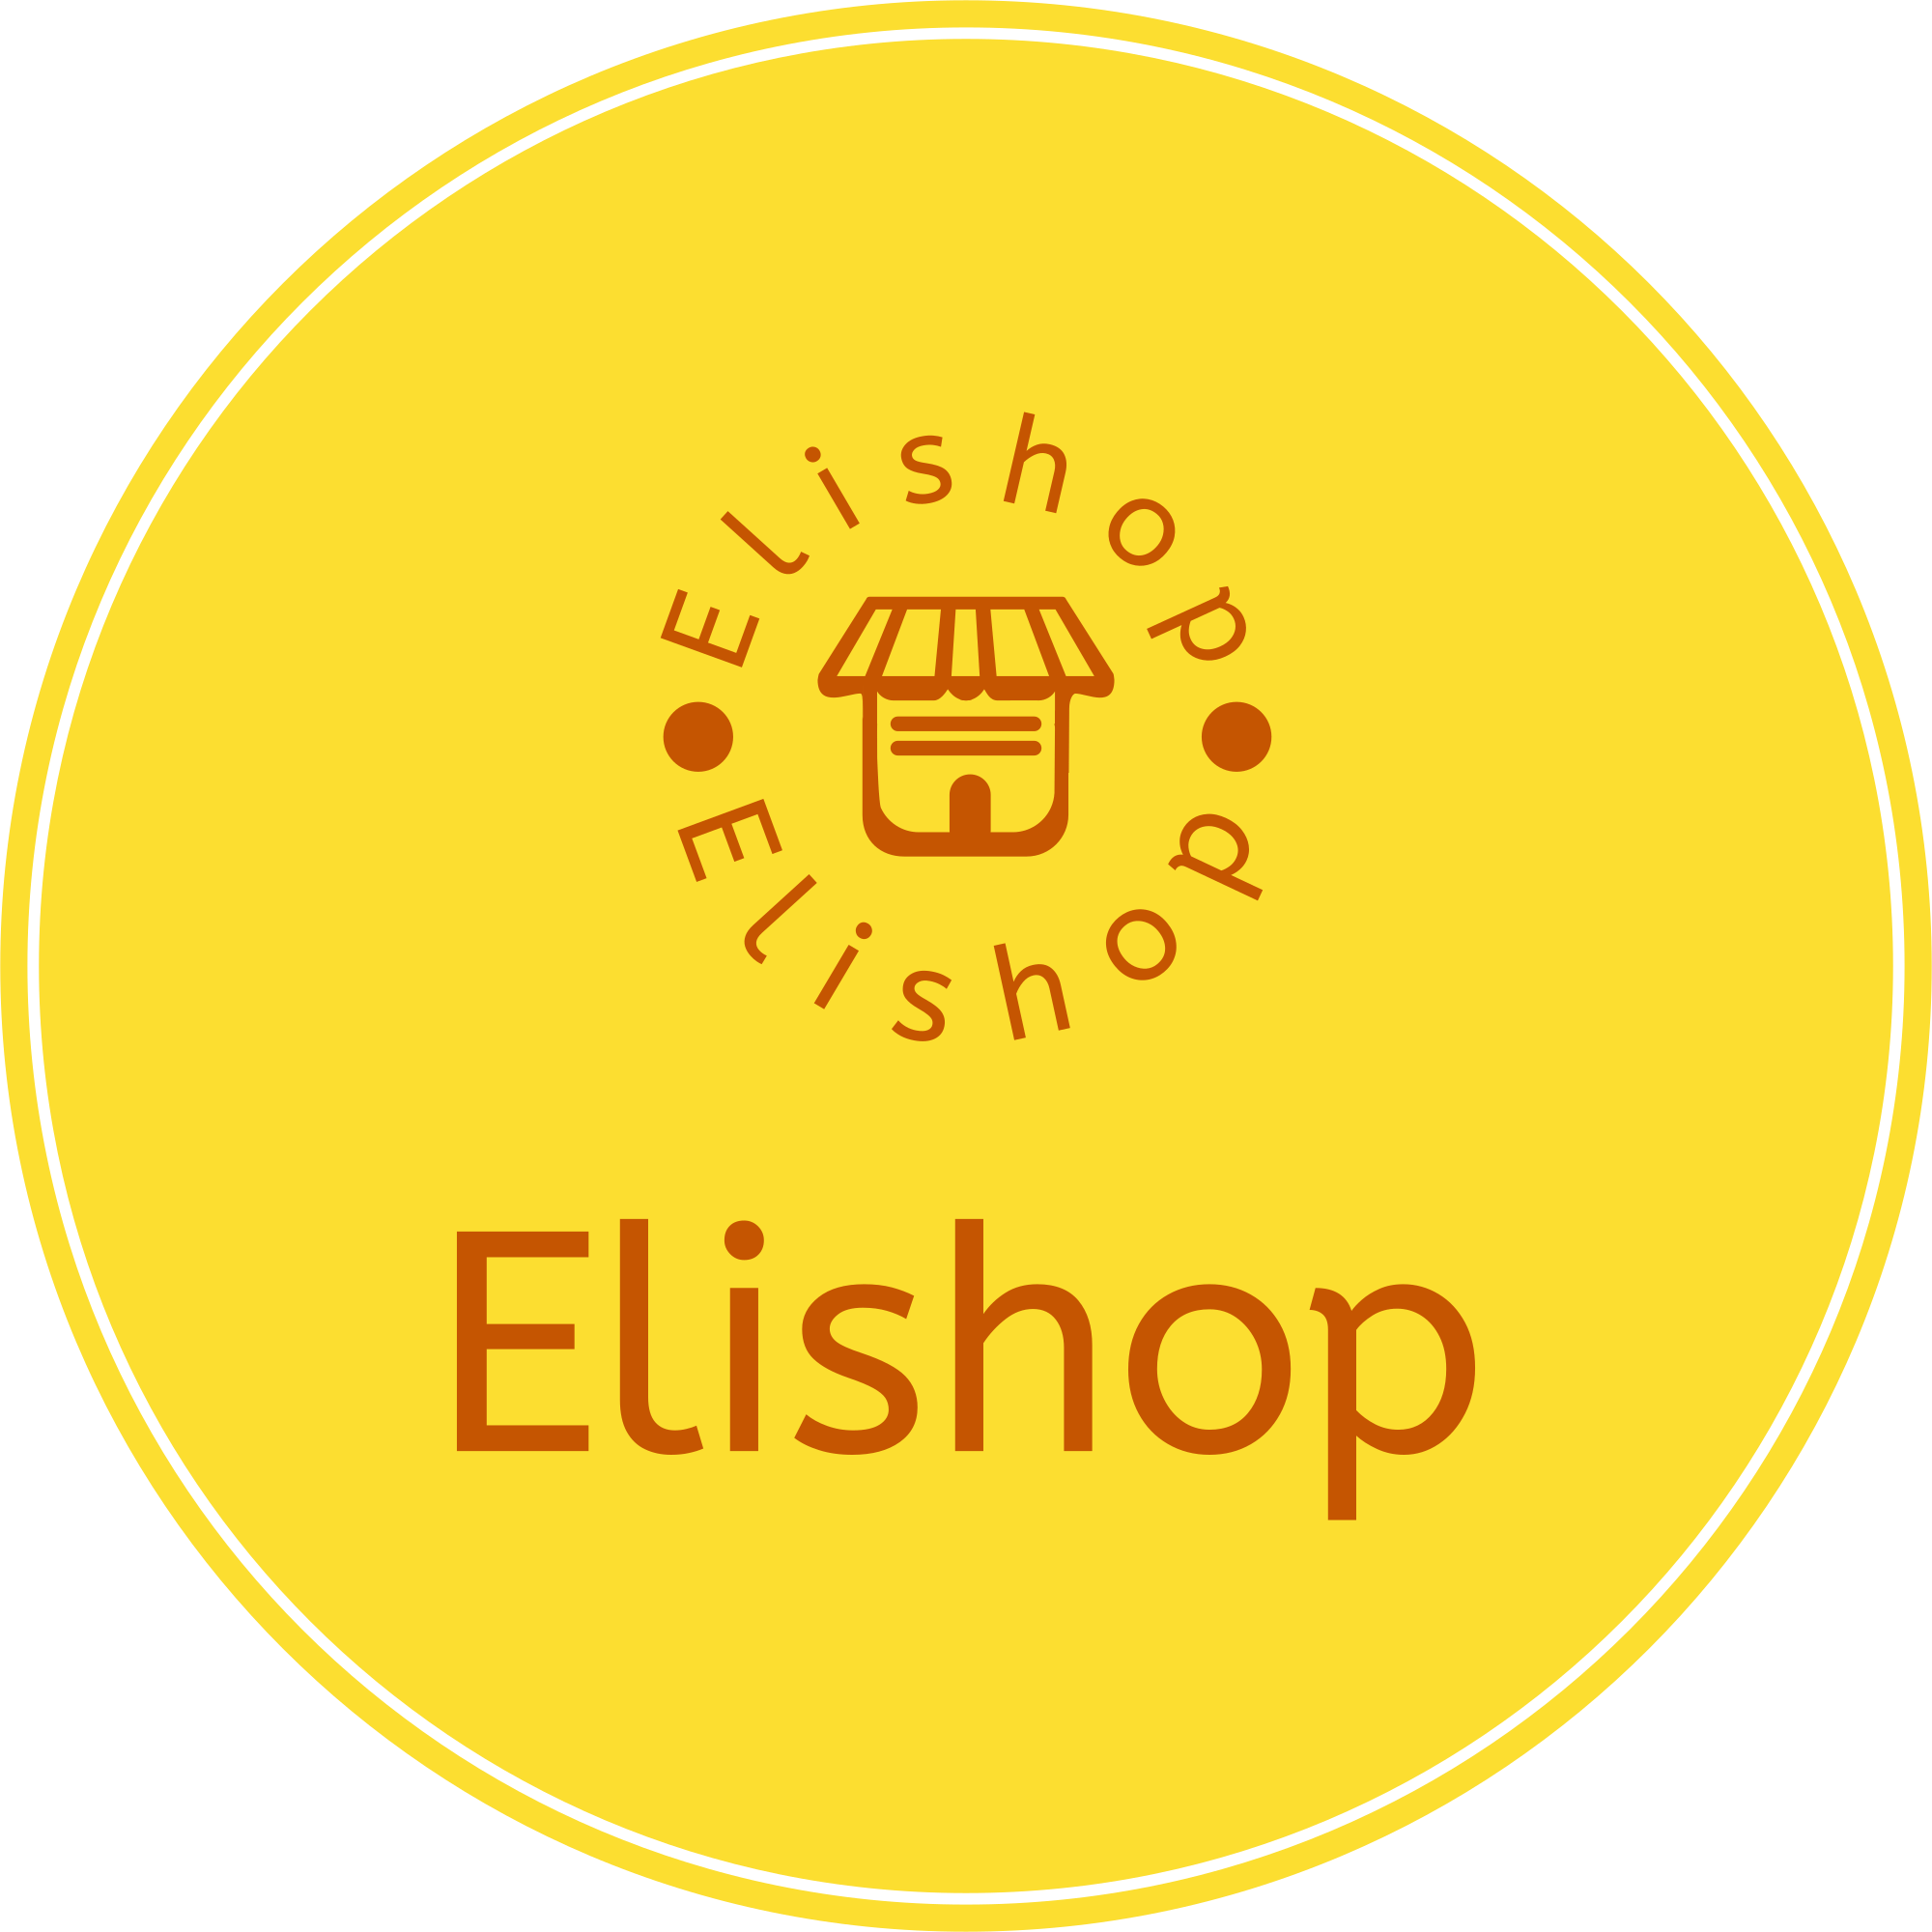 Elishop